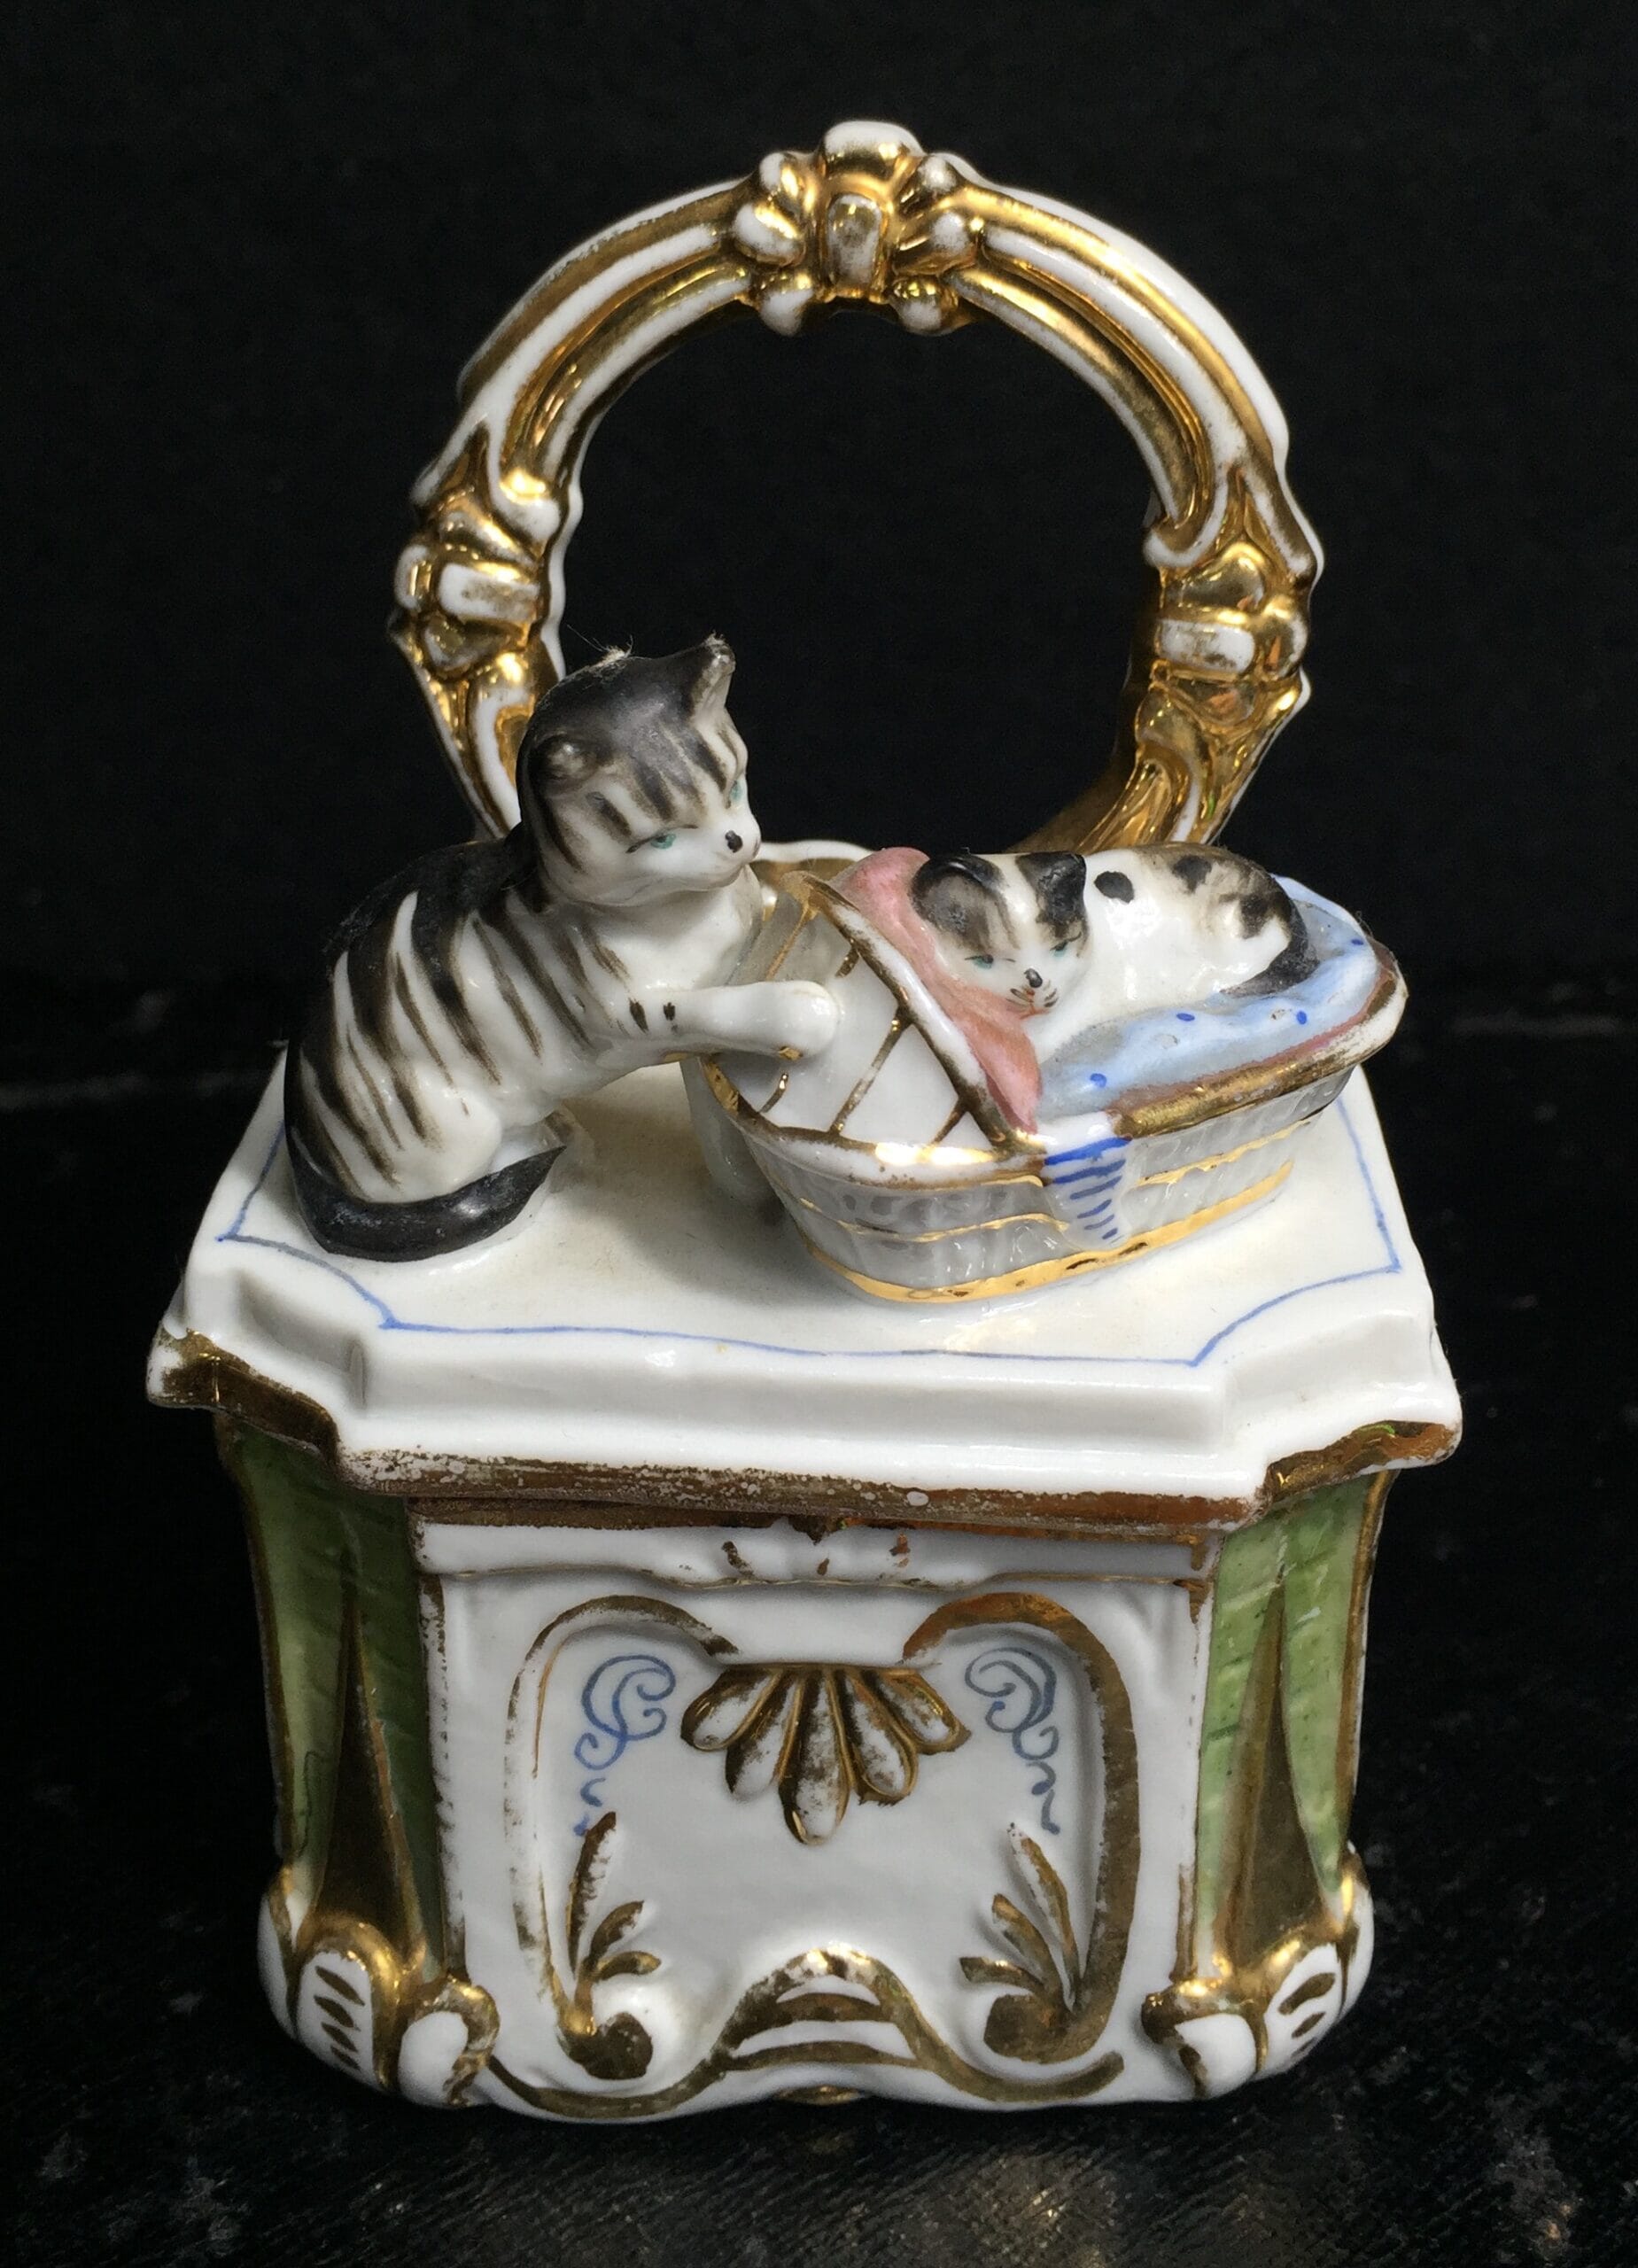 German Fairing pinbox, cats on a dresser, c. 1870-0